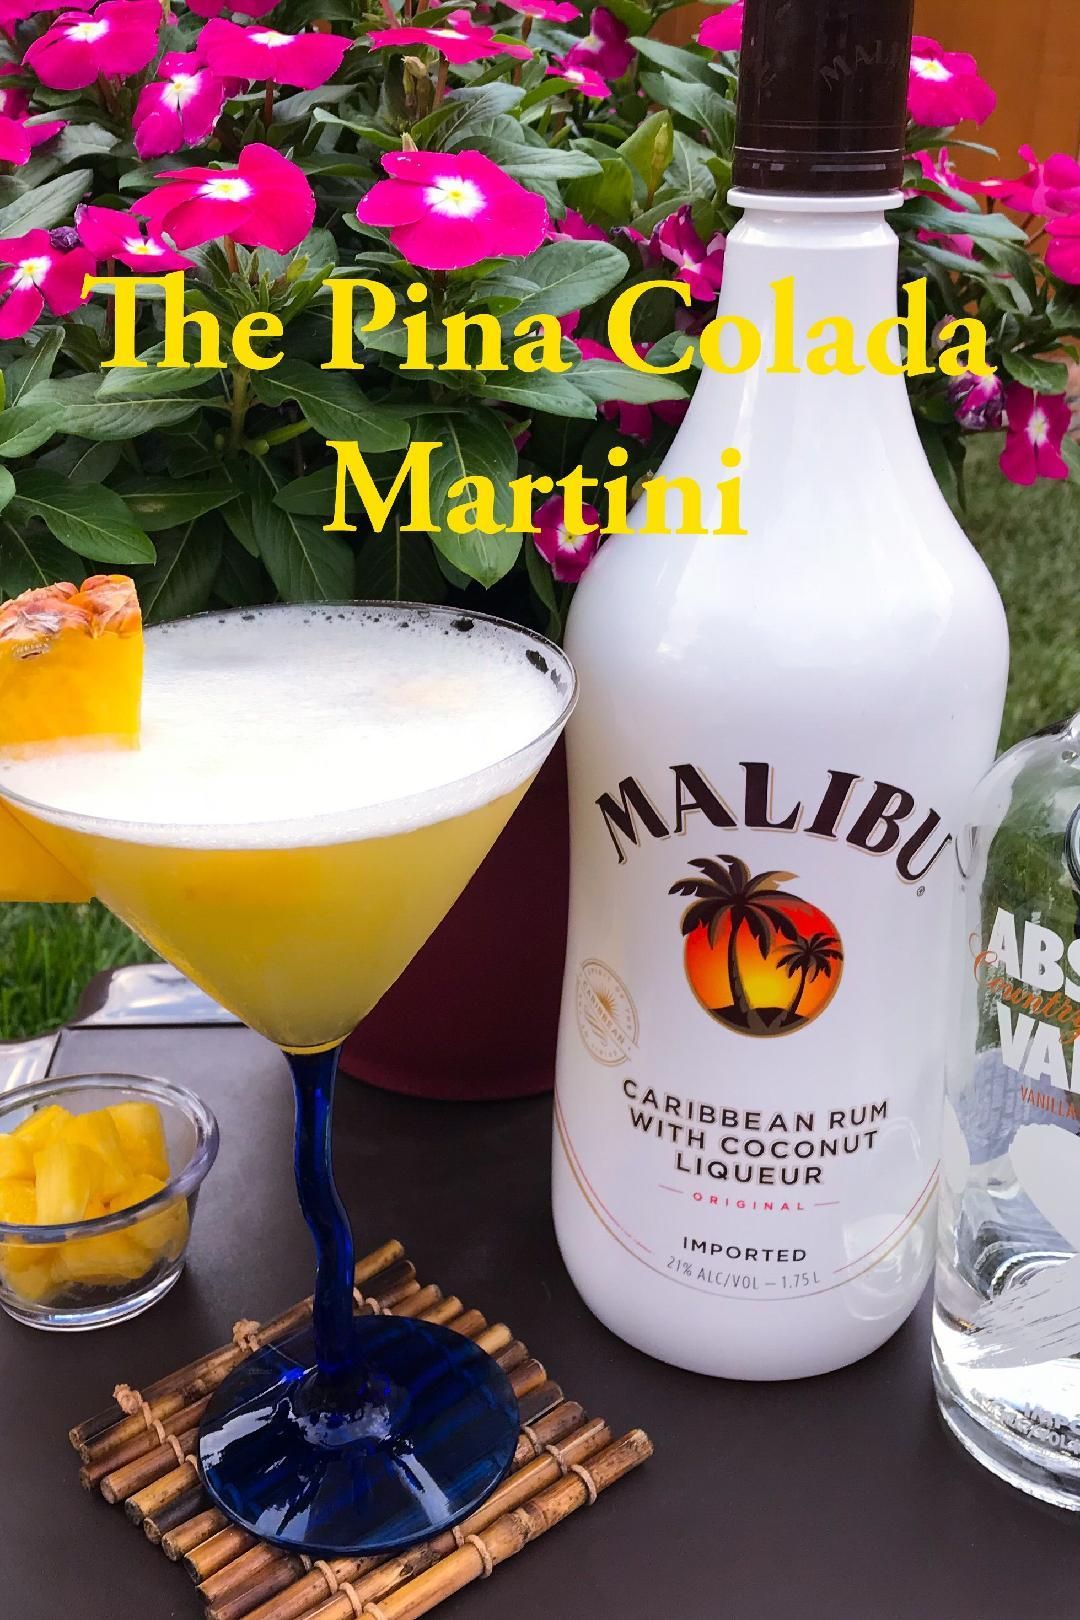 The Pina Colada Martini